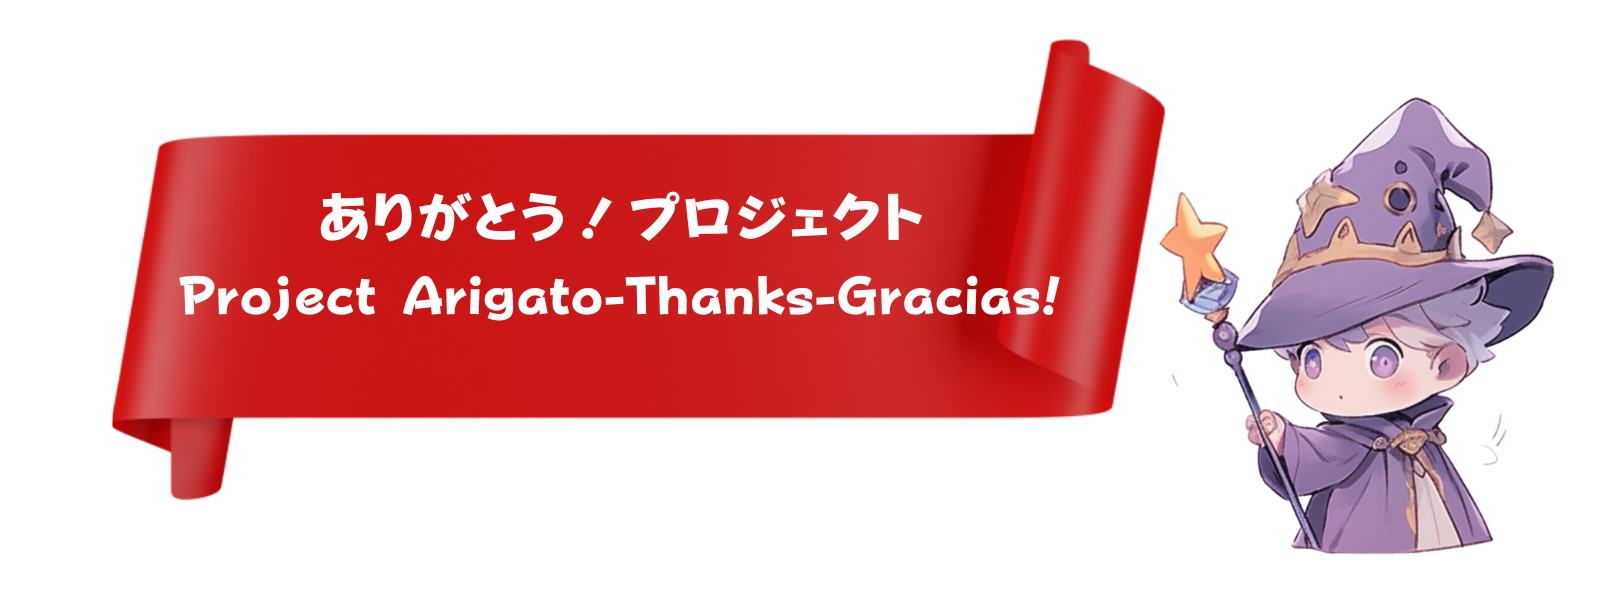 ありがとうプロジェクト :  Project Arigato-Thanks-Gracias!